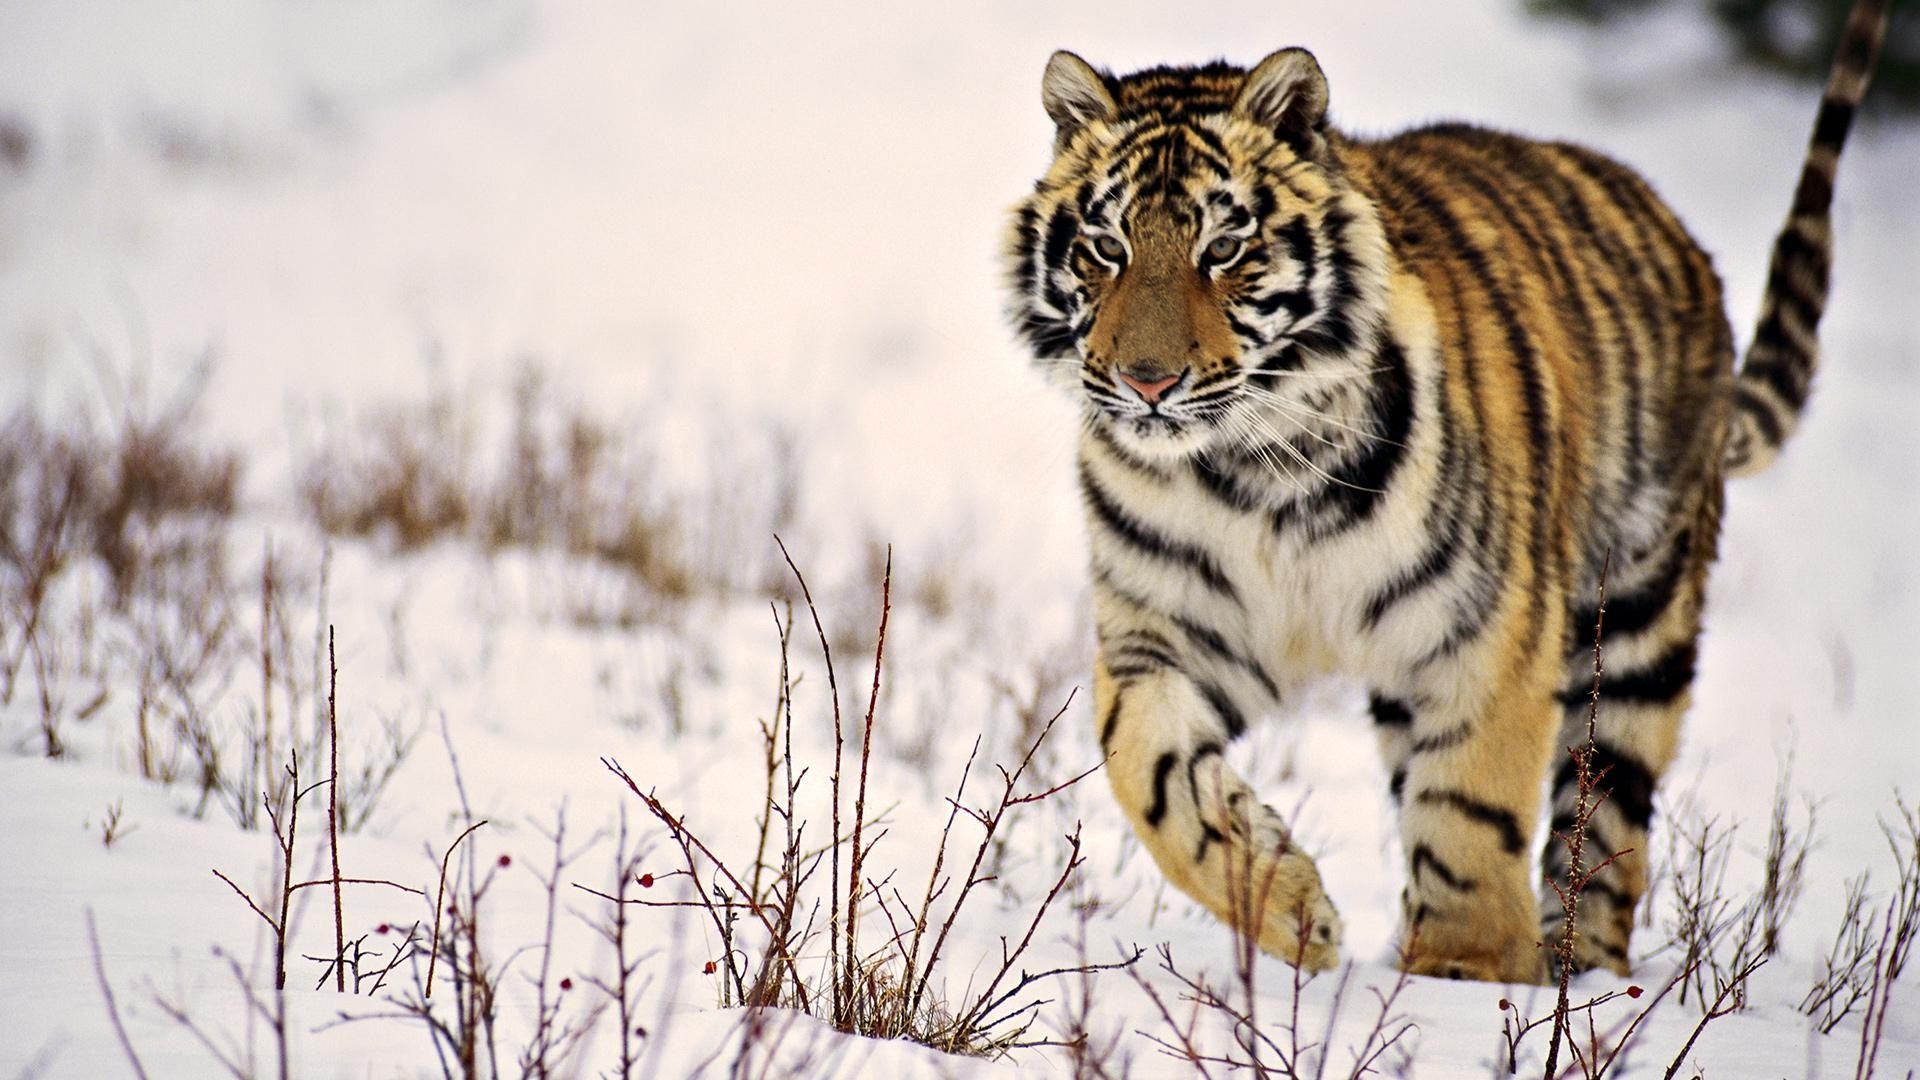 Snow Tiger HD Wallpaper | 1920x1080 | ID:21812